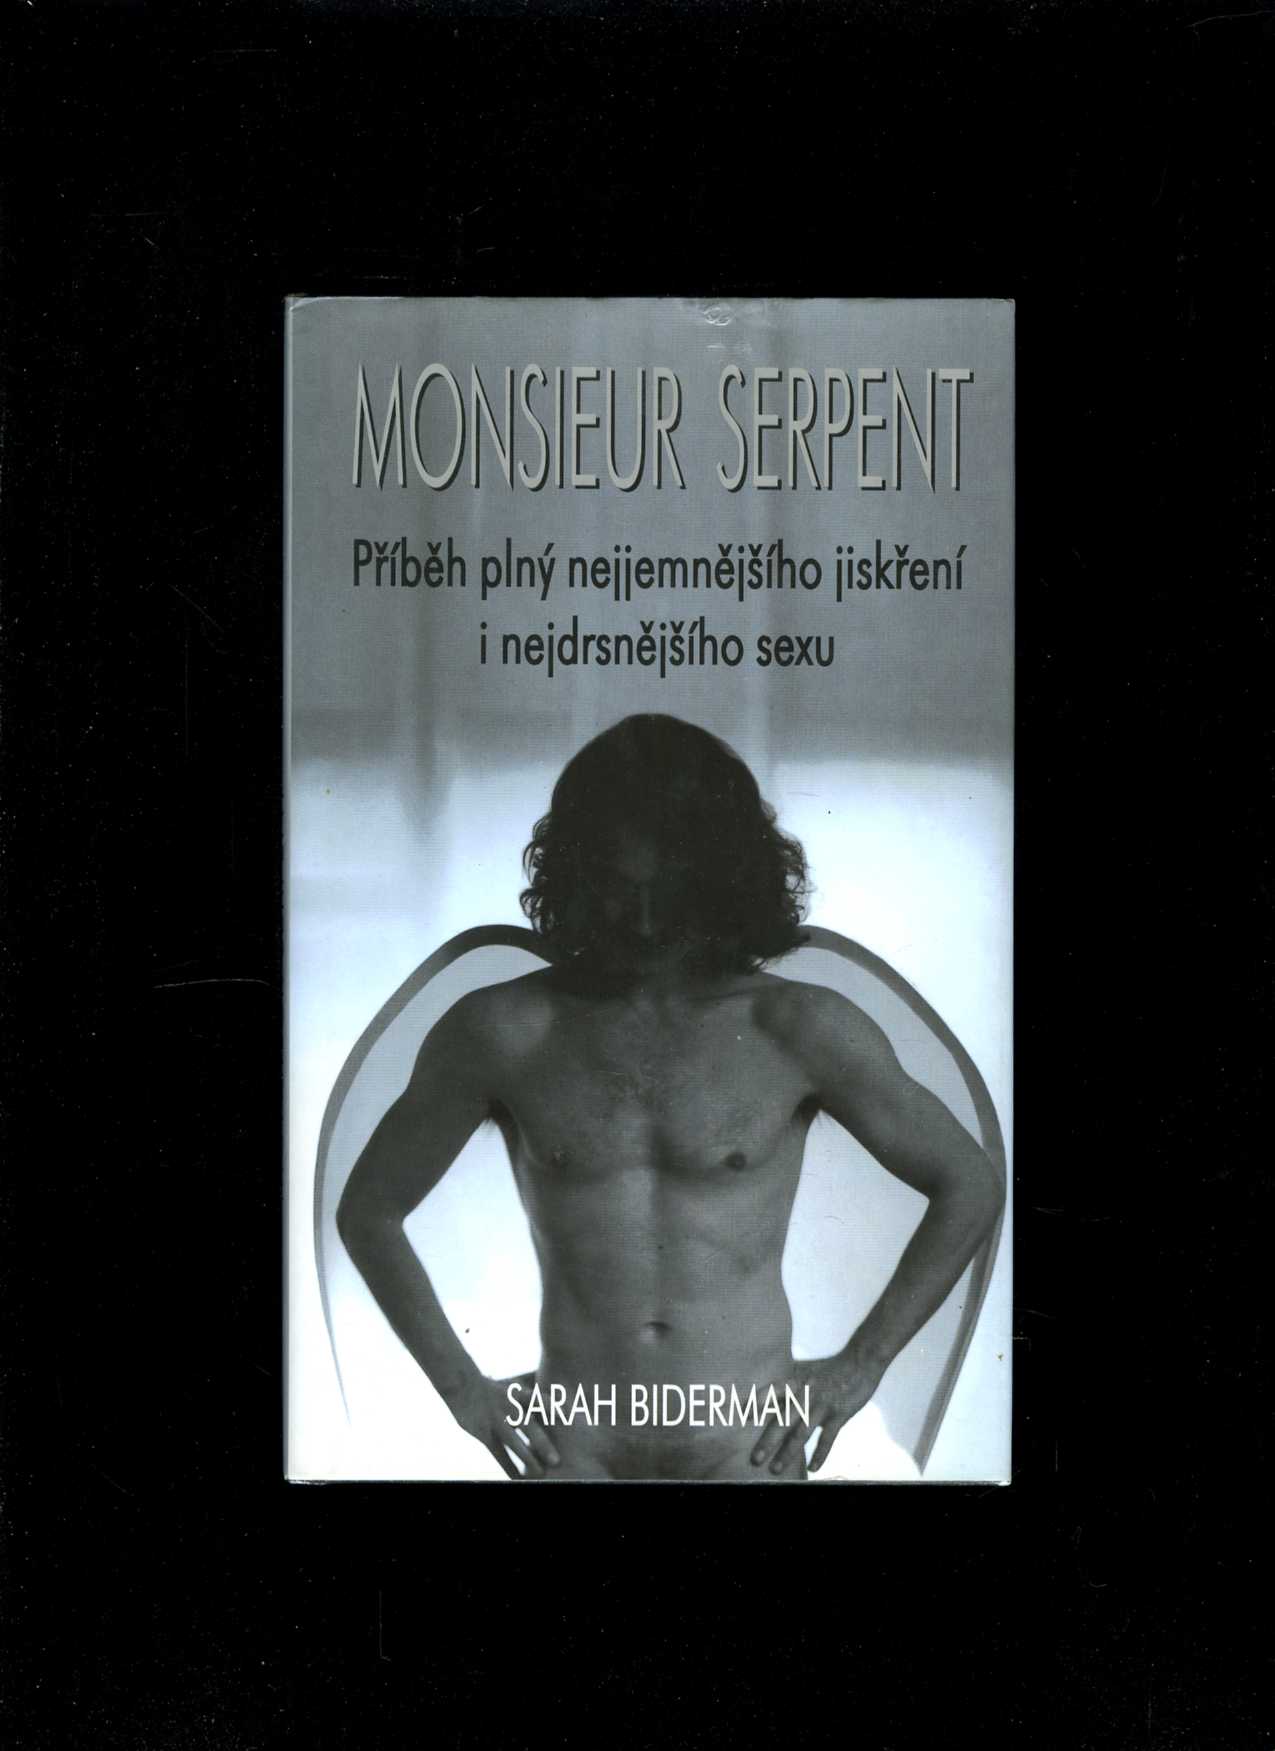 Monsieur Serpent (Sarah Biderman)